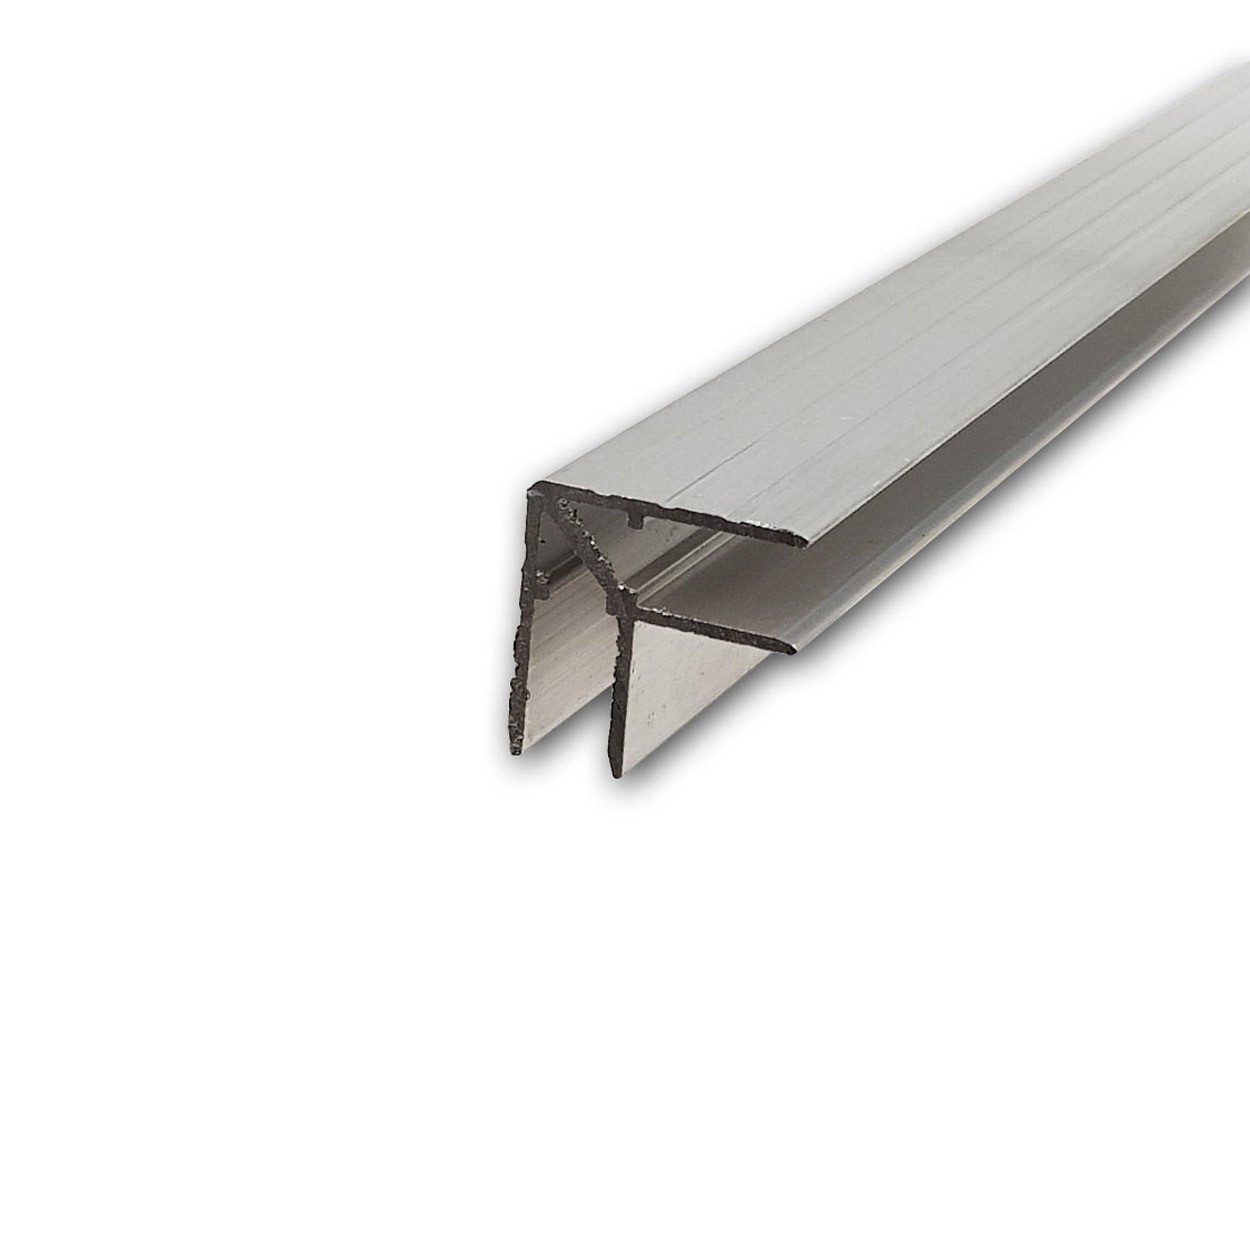 Profilé aluminium cornière double vendu au mètre penn elcom